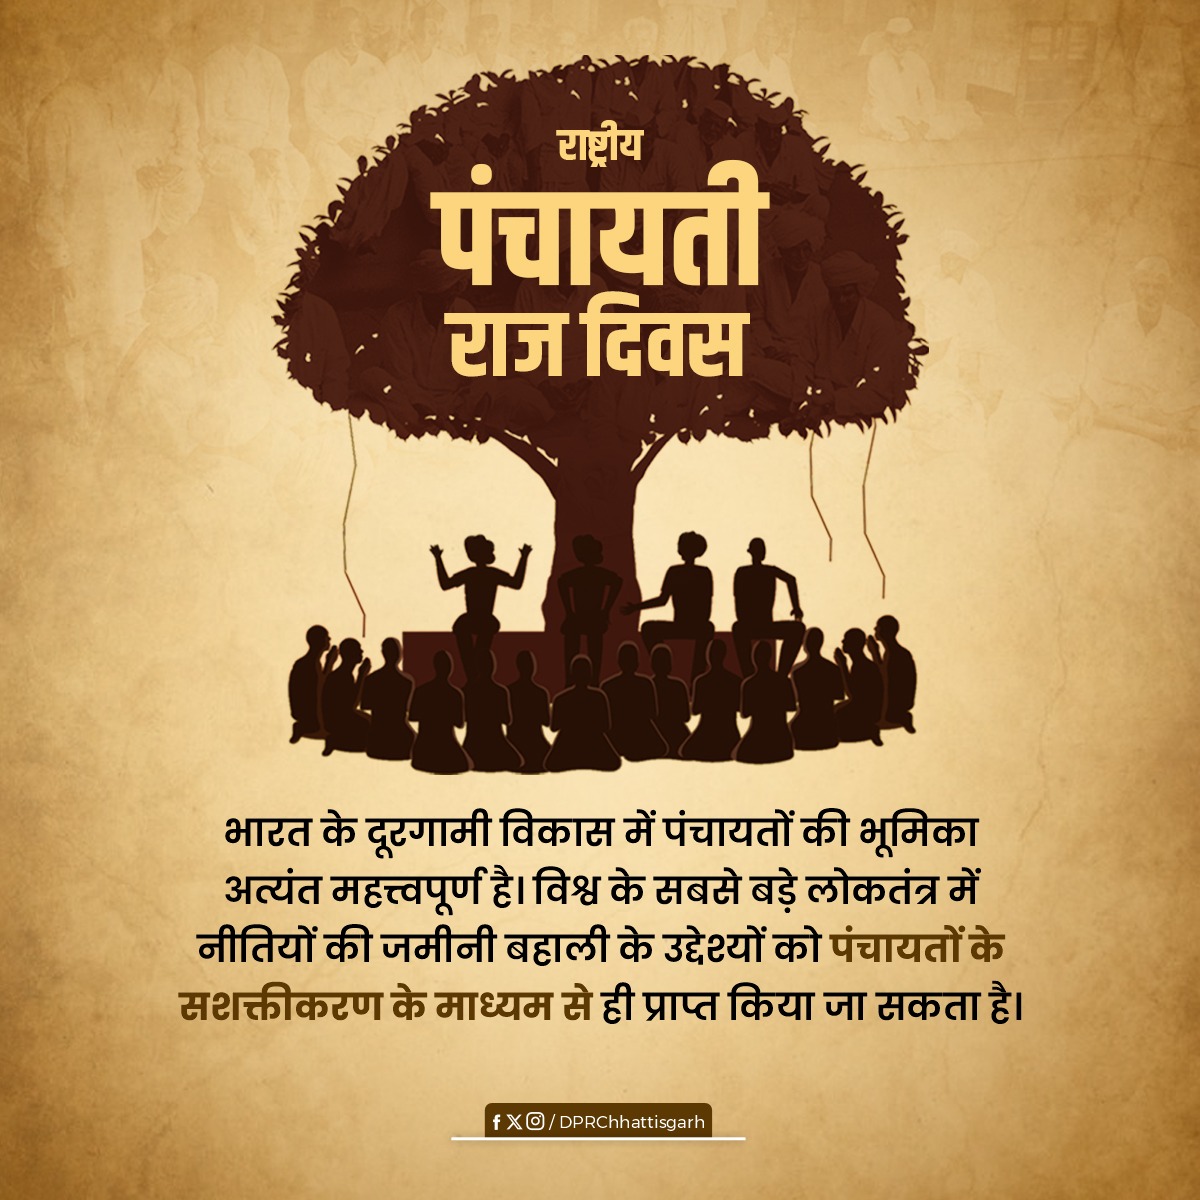 गावों के सर्वगीर्ण विकास के लिए समर्पित समस्त पंचायती राज संस्थाओं को राष्ट्रीय पंचायती राज दिवस की शुभकामनाएं। #panchayatirajdiwas